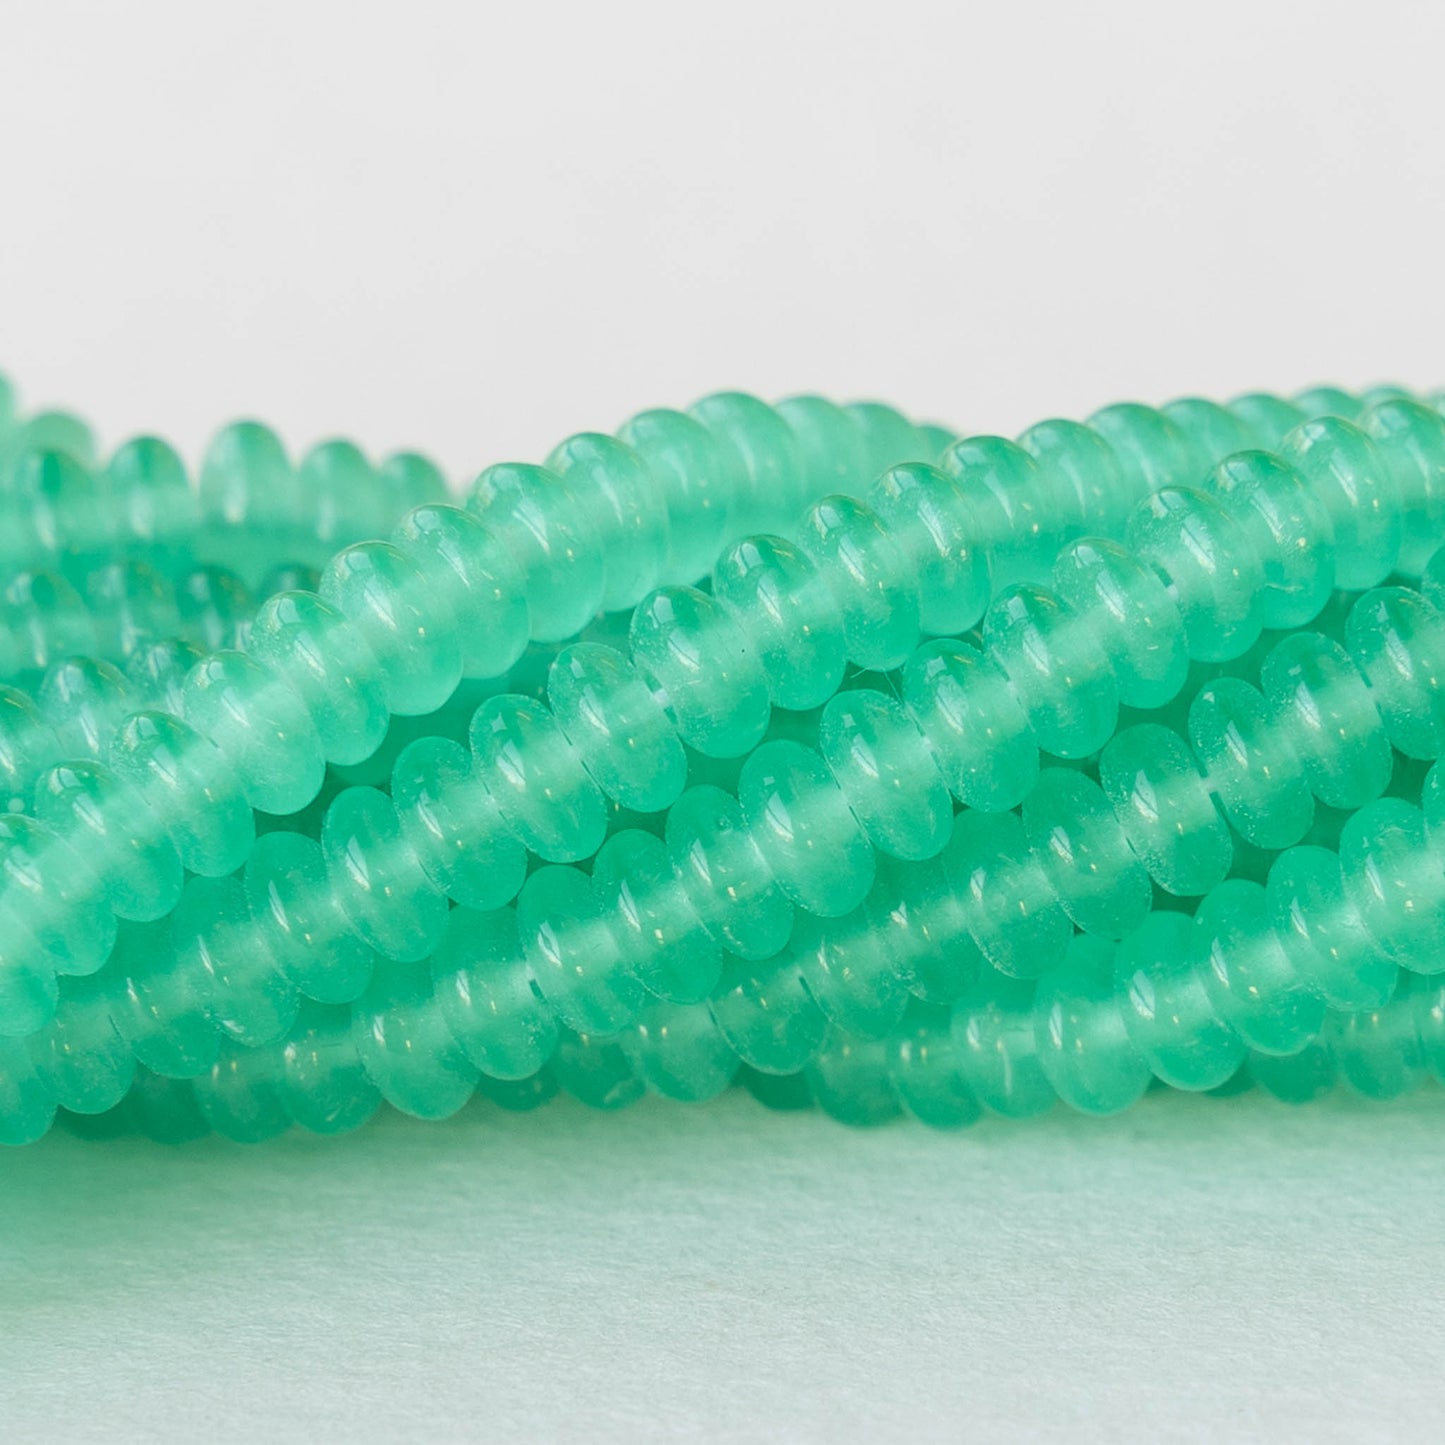 4mm Rondelle Beads - Opaline Seafoam - 100 Beads